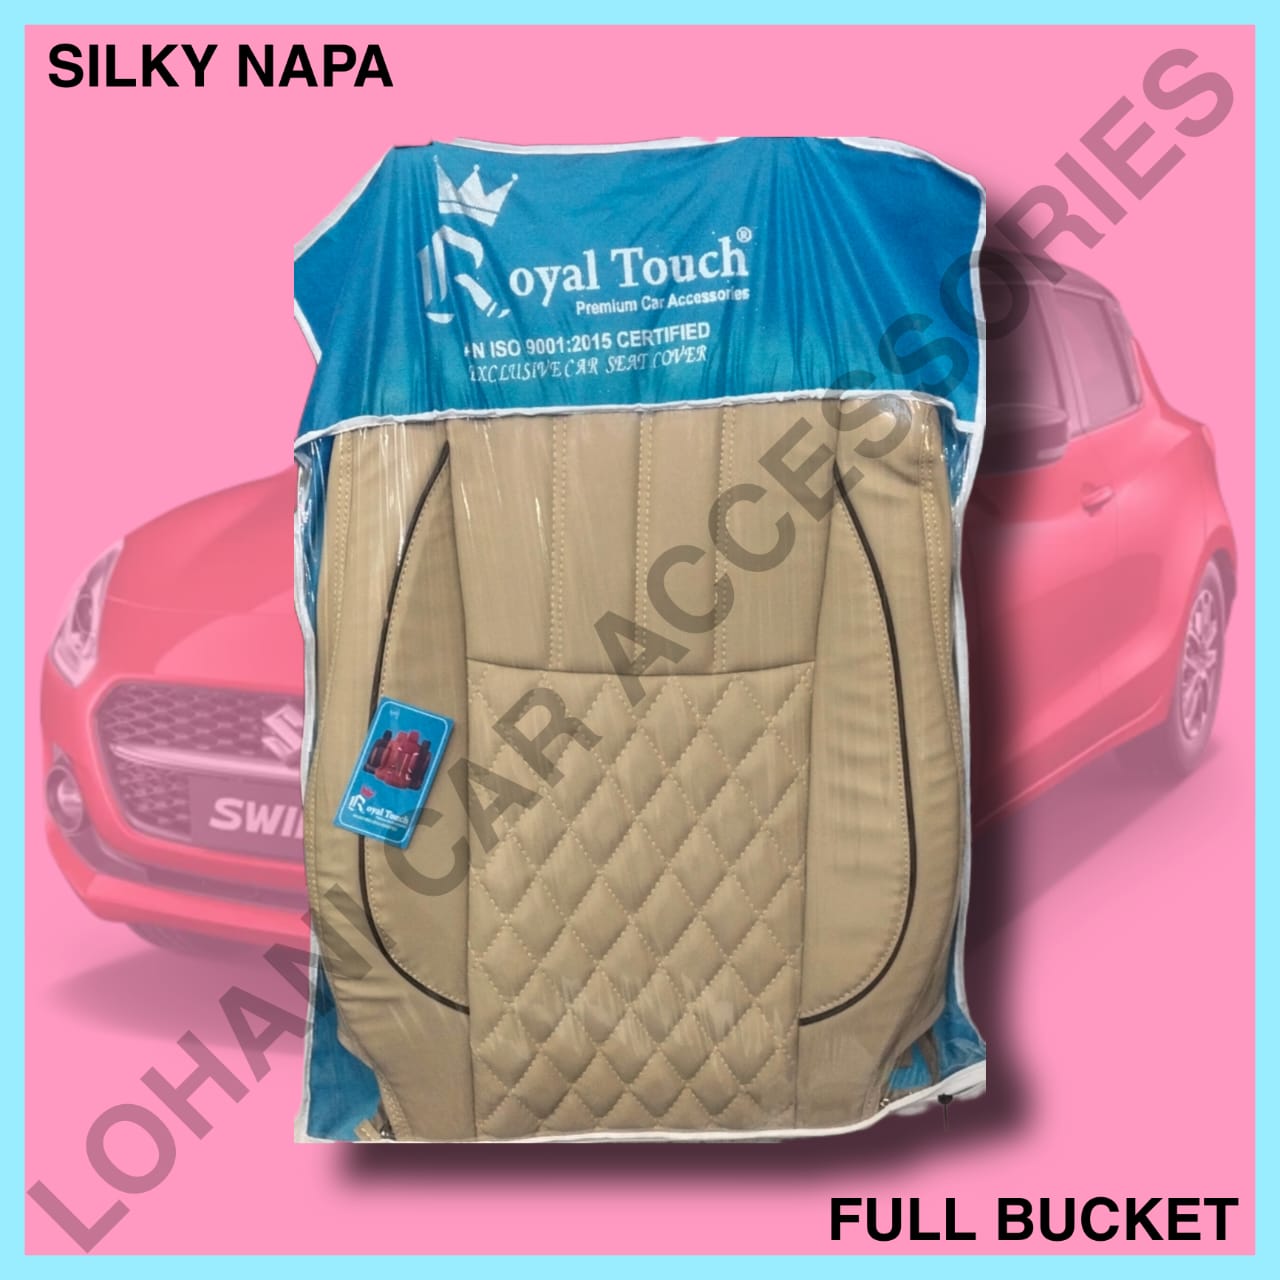 Silky Napa Seat Cover